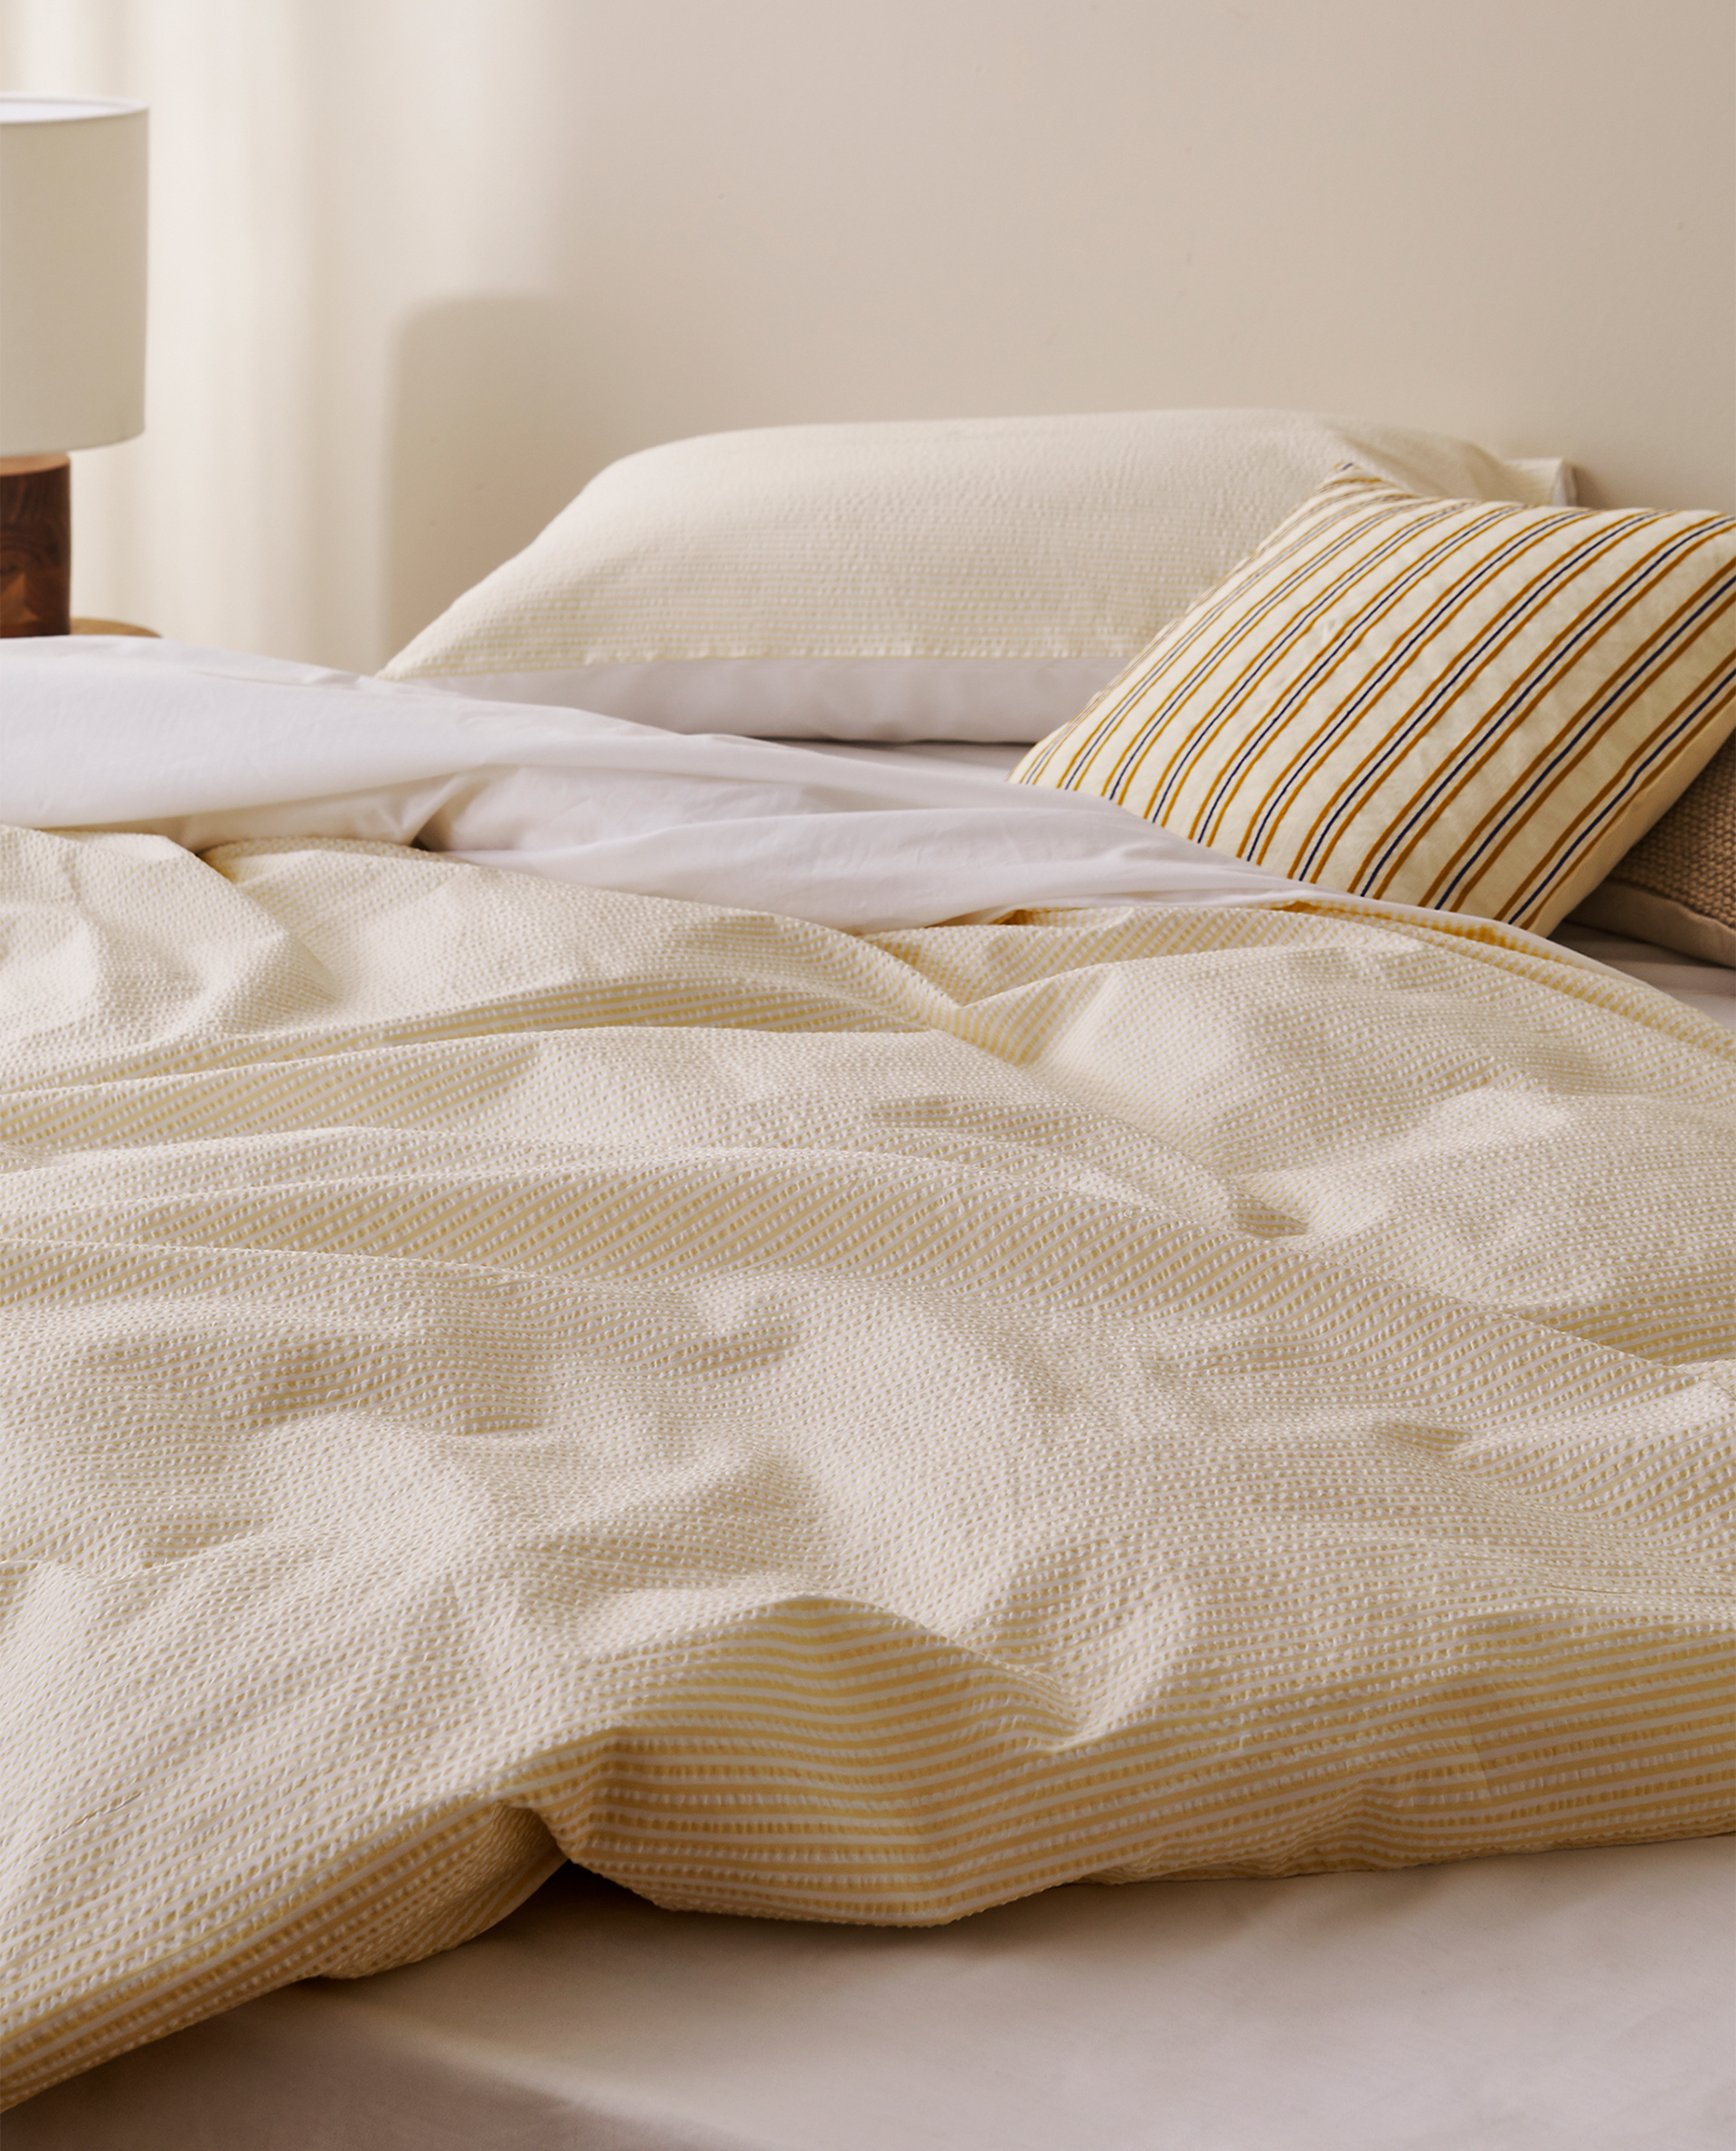 Striped Seersucker Duvet Cover Duvet Covers Bed Linen